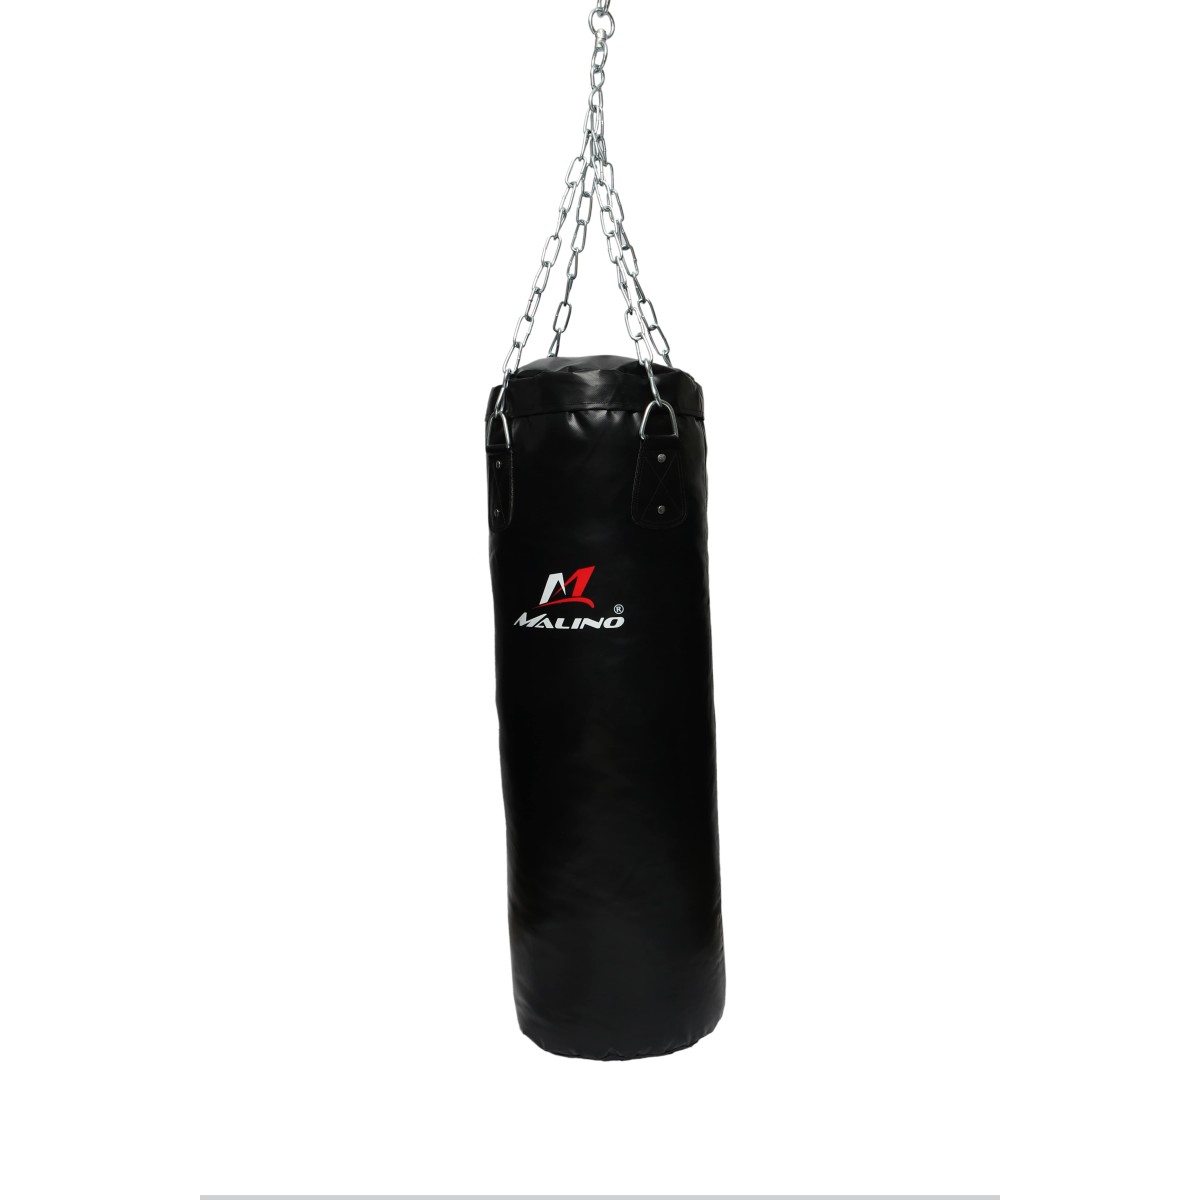 Malino Premium Unfilled Boxing Punching Bag for Training